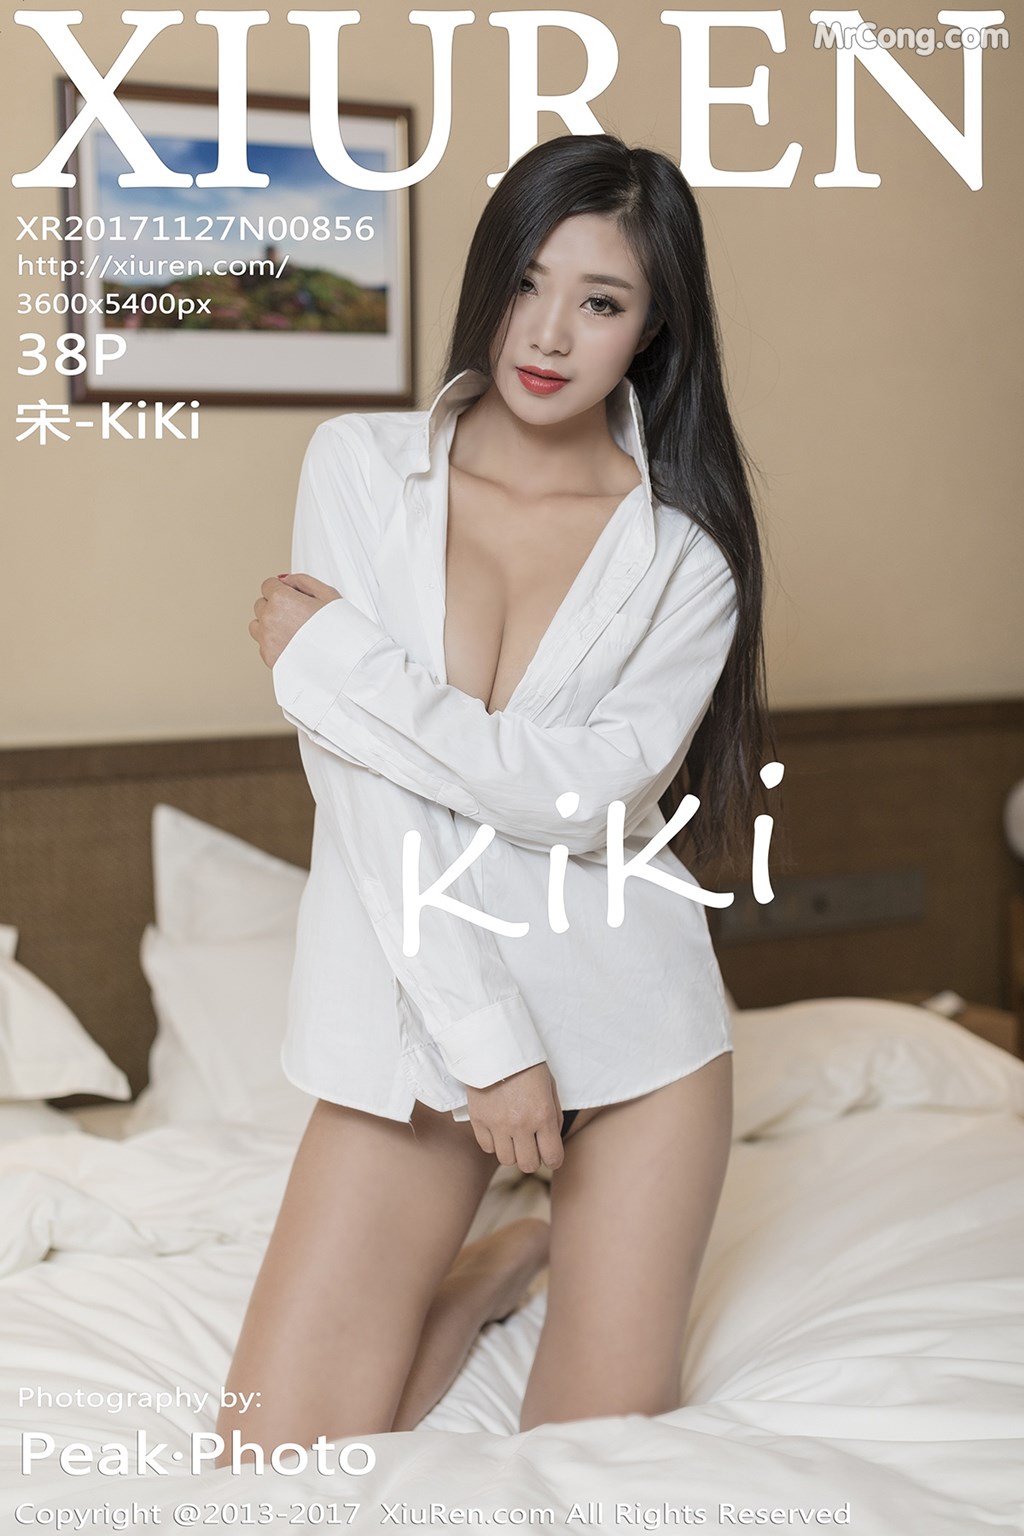 XIUREN No.856: Model 宋 -KiKi (39 photos) photo 1-0